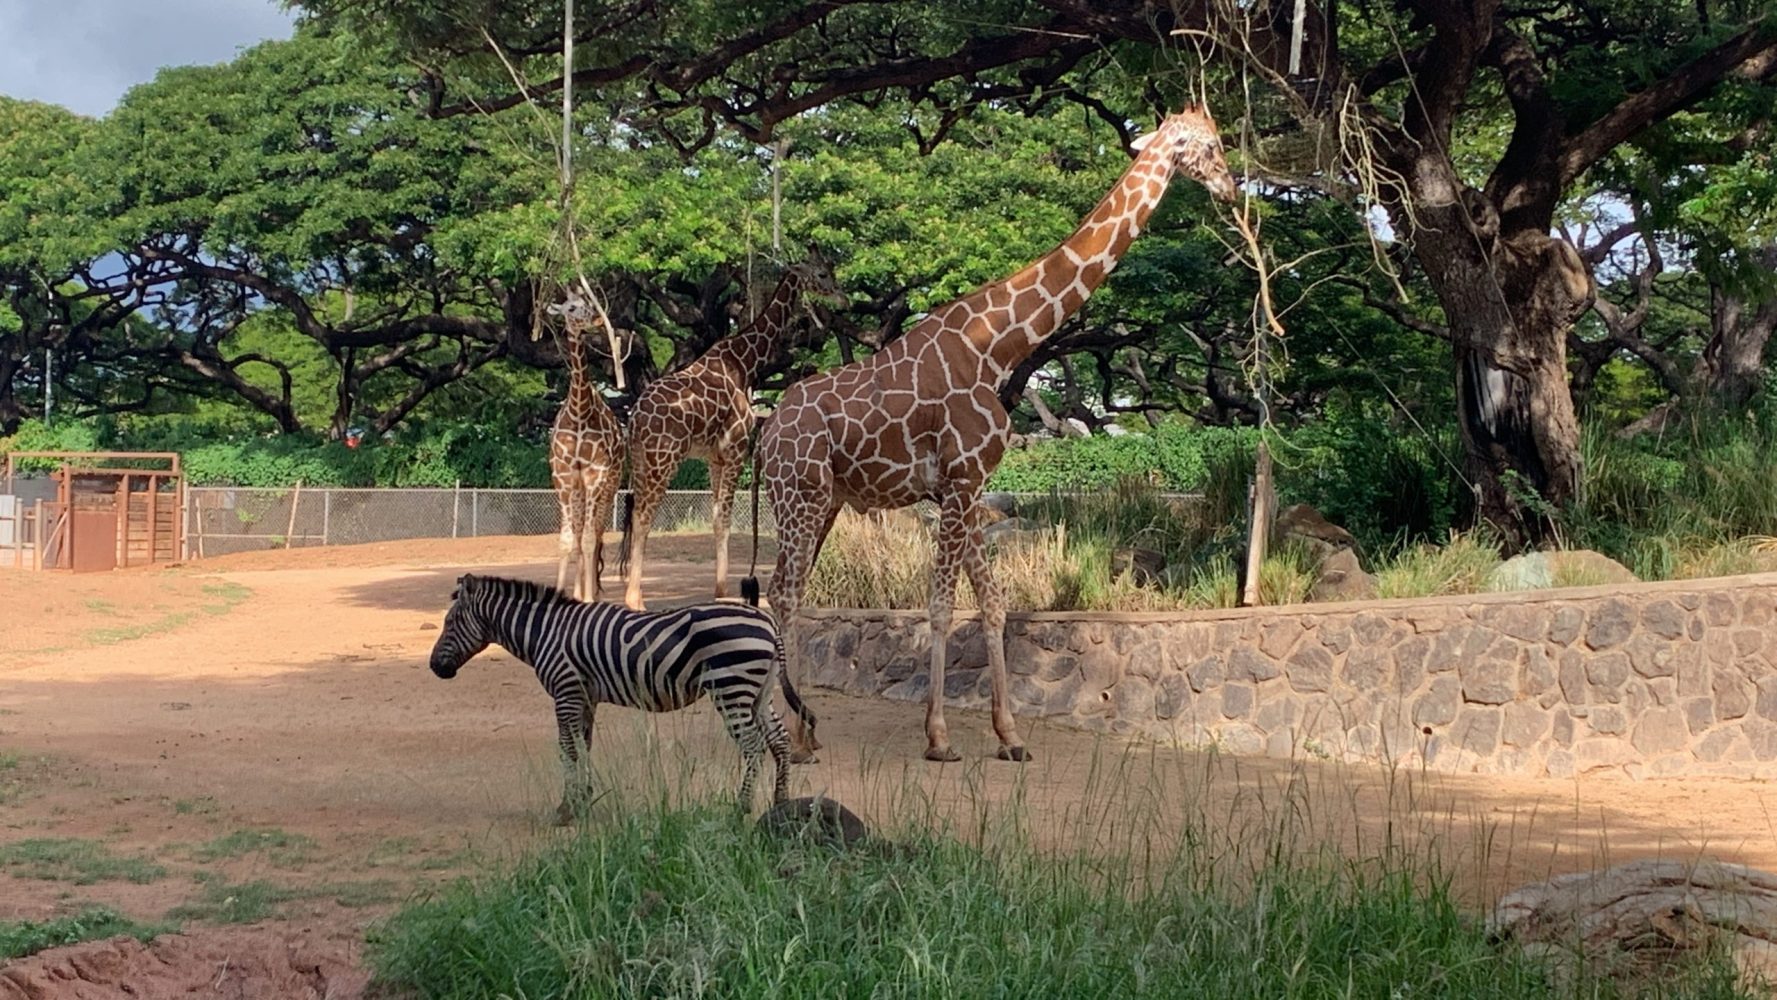 a group of giraffe standing next to a zebra